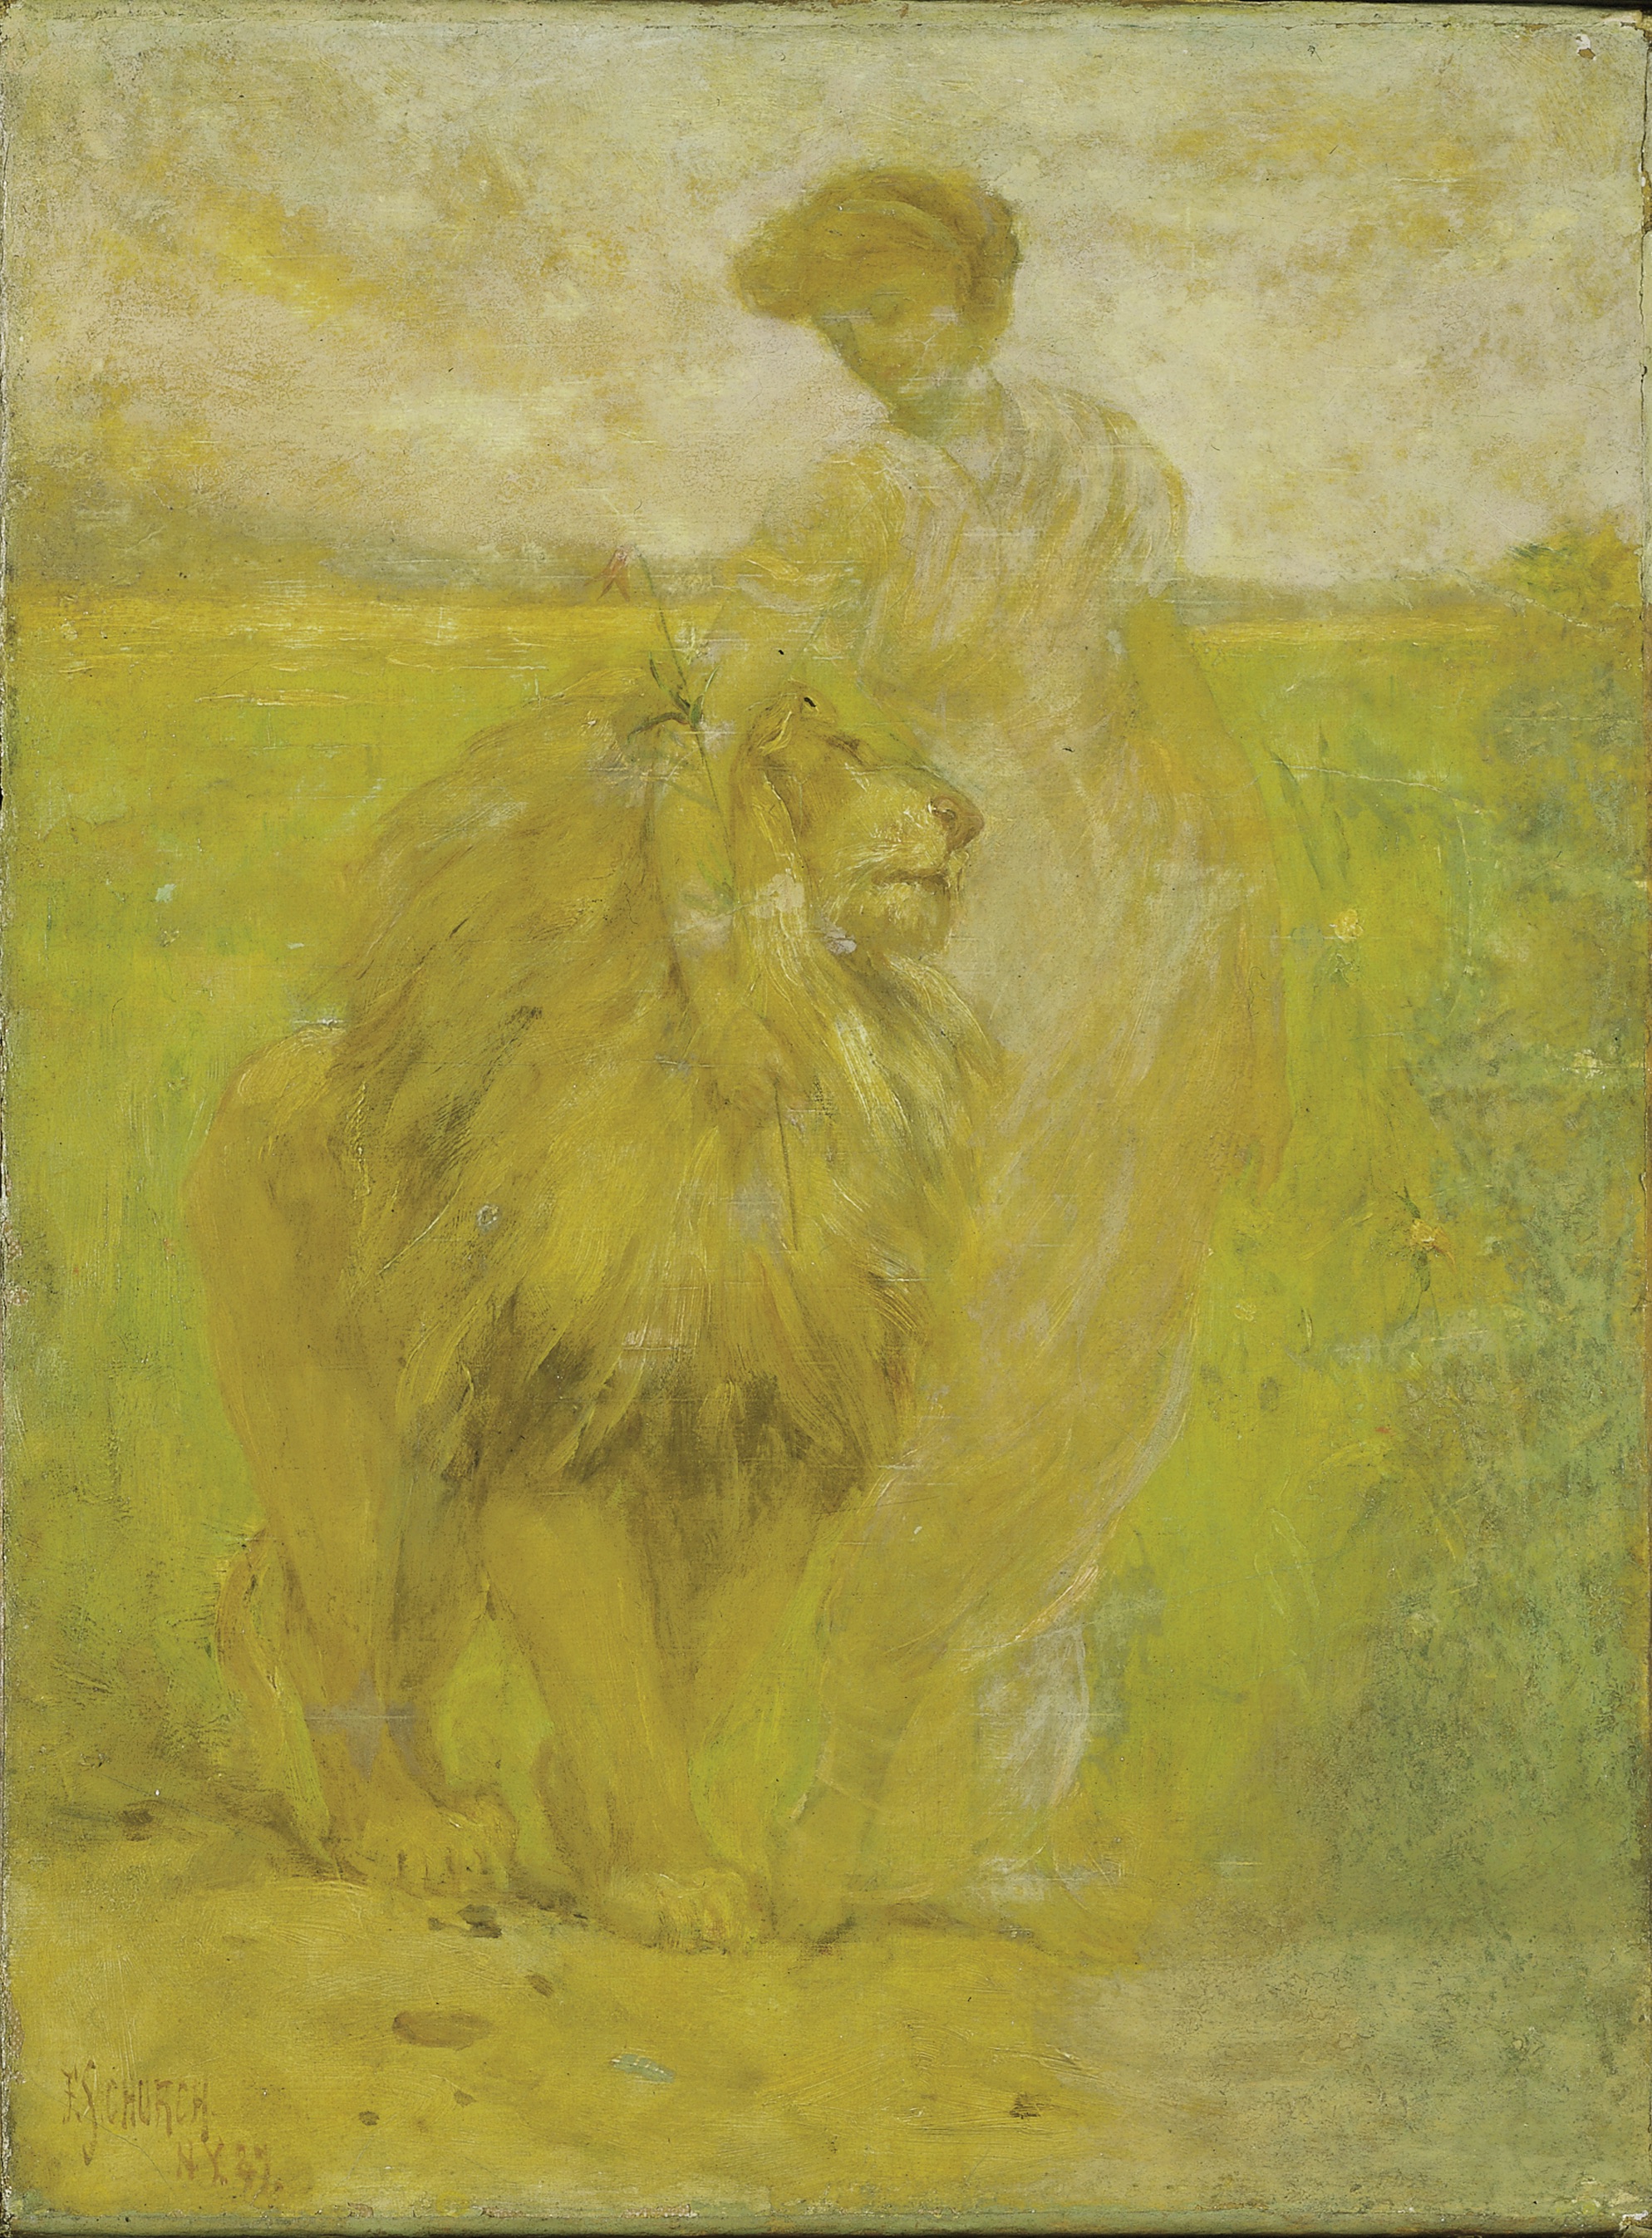 Supremazia by Frederick Stuart Church - 1887 - 40,9 x 30,4 cm 